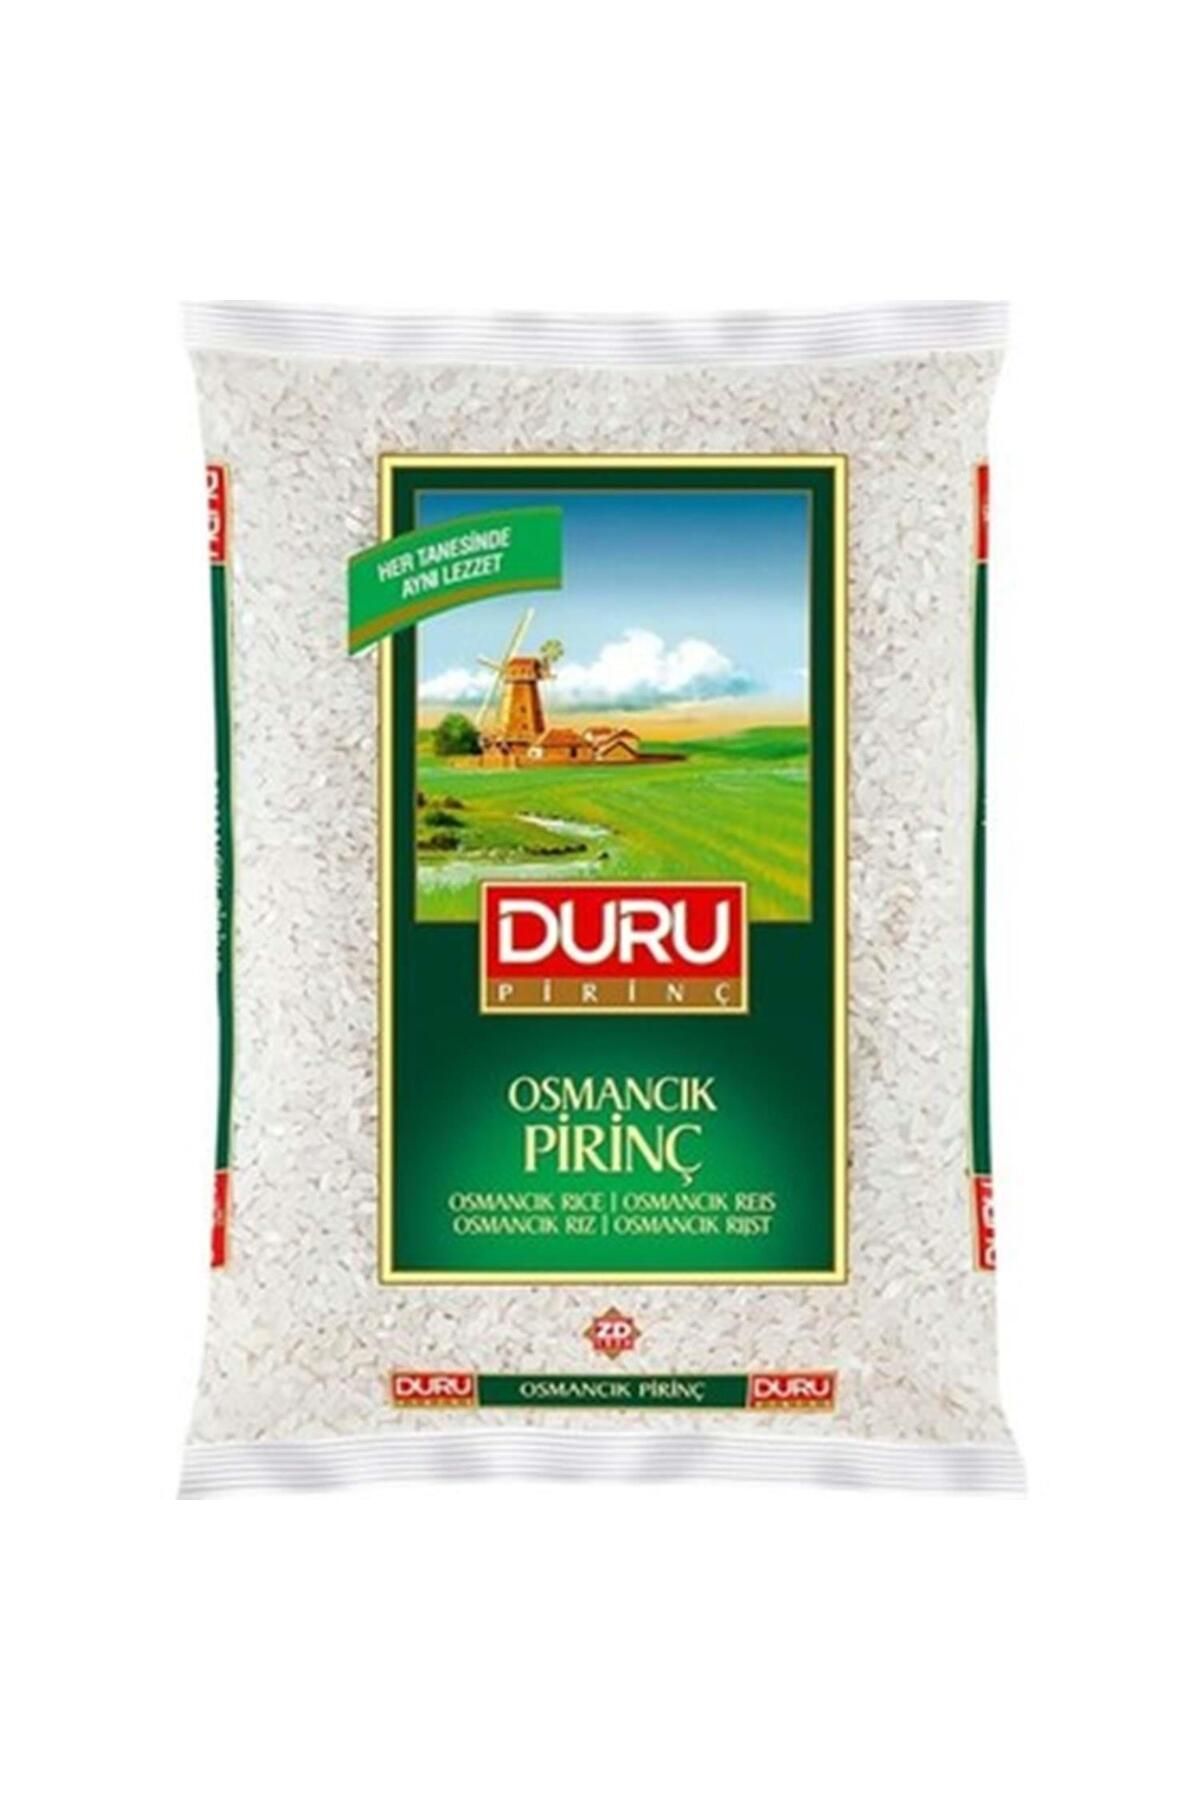 Duru Osmancık Pirinç 2000 Gr. (4'LÜ)